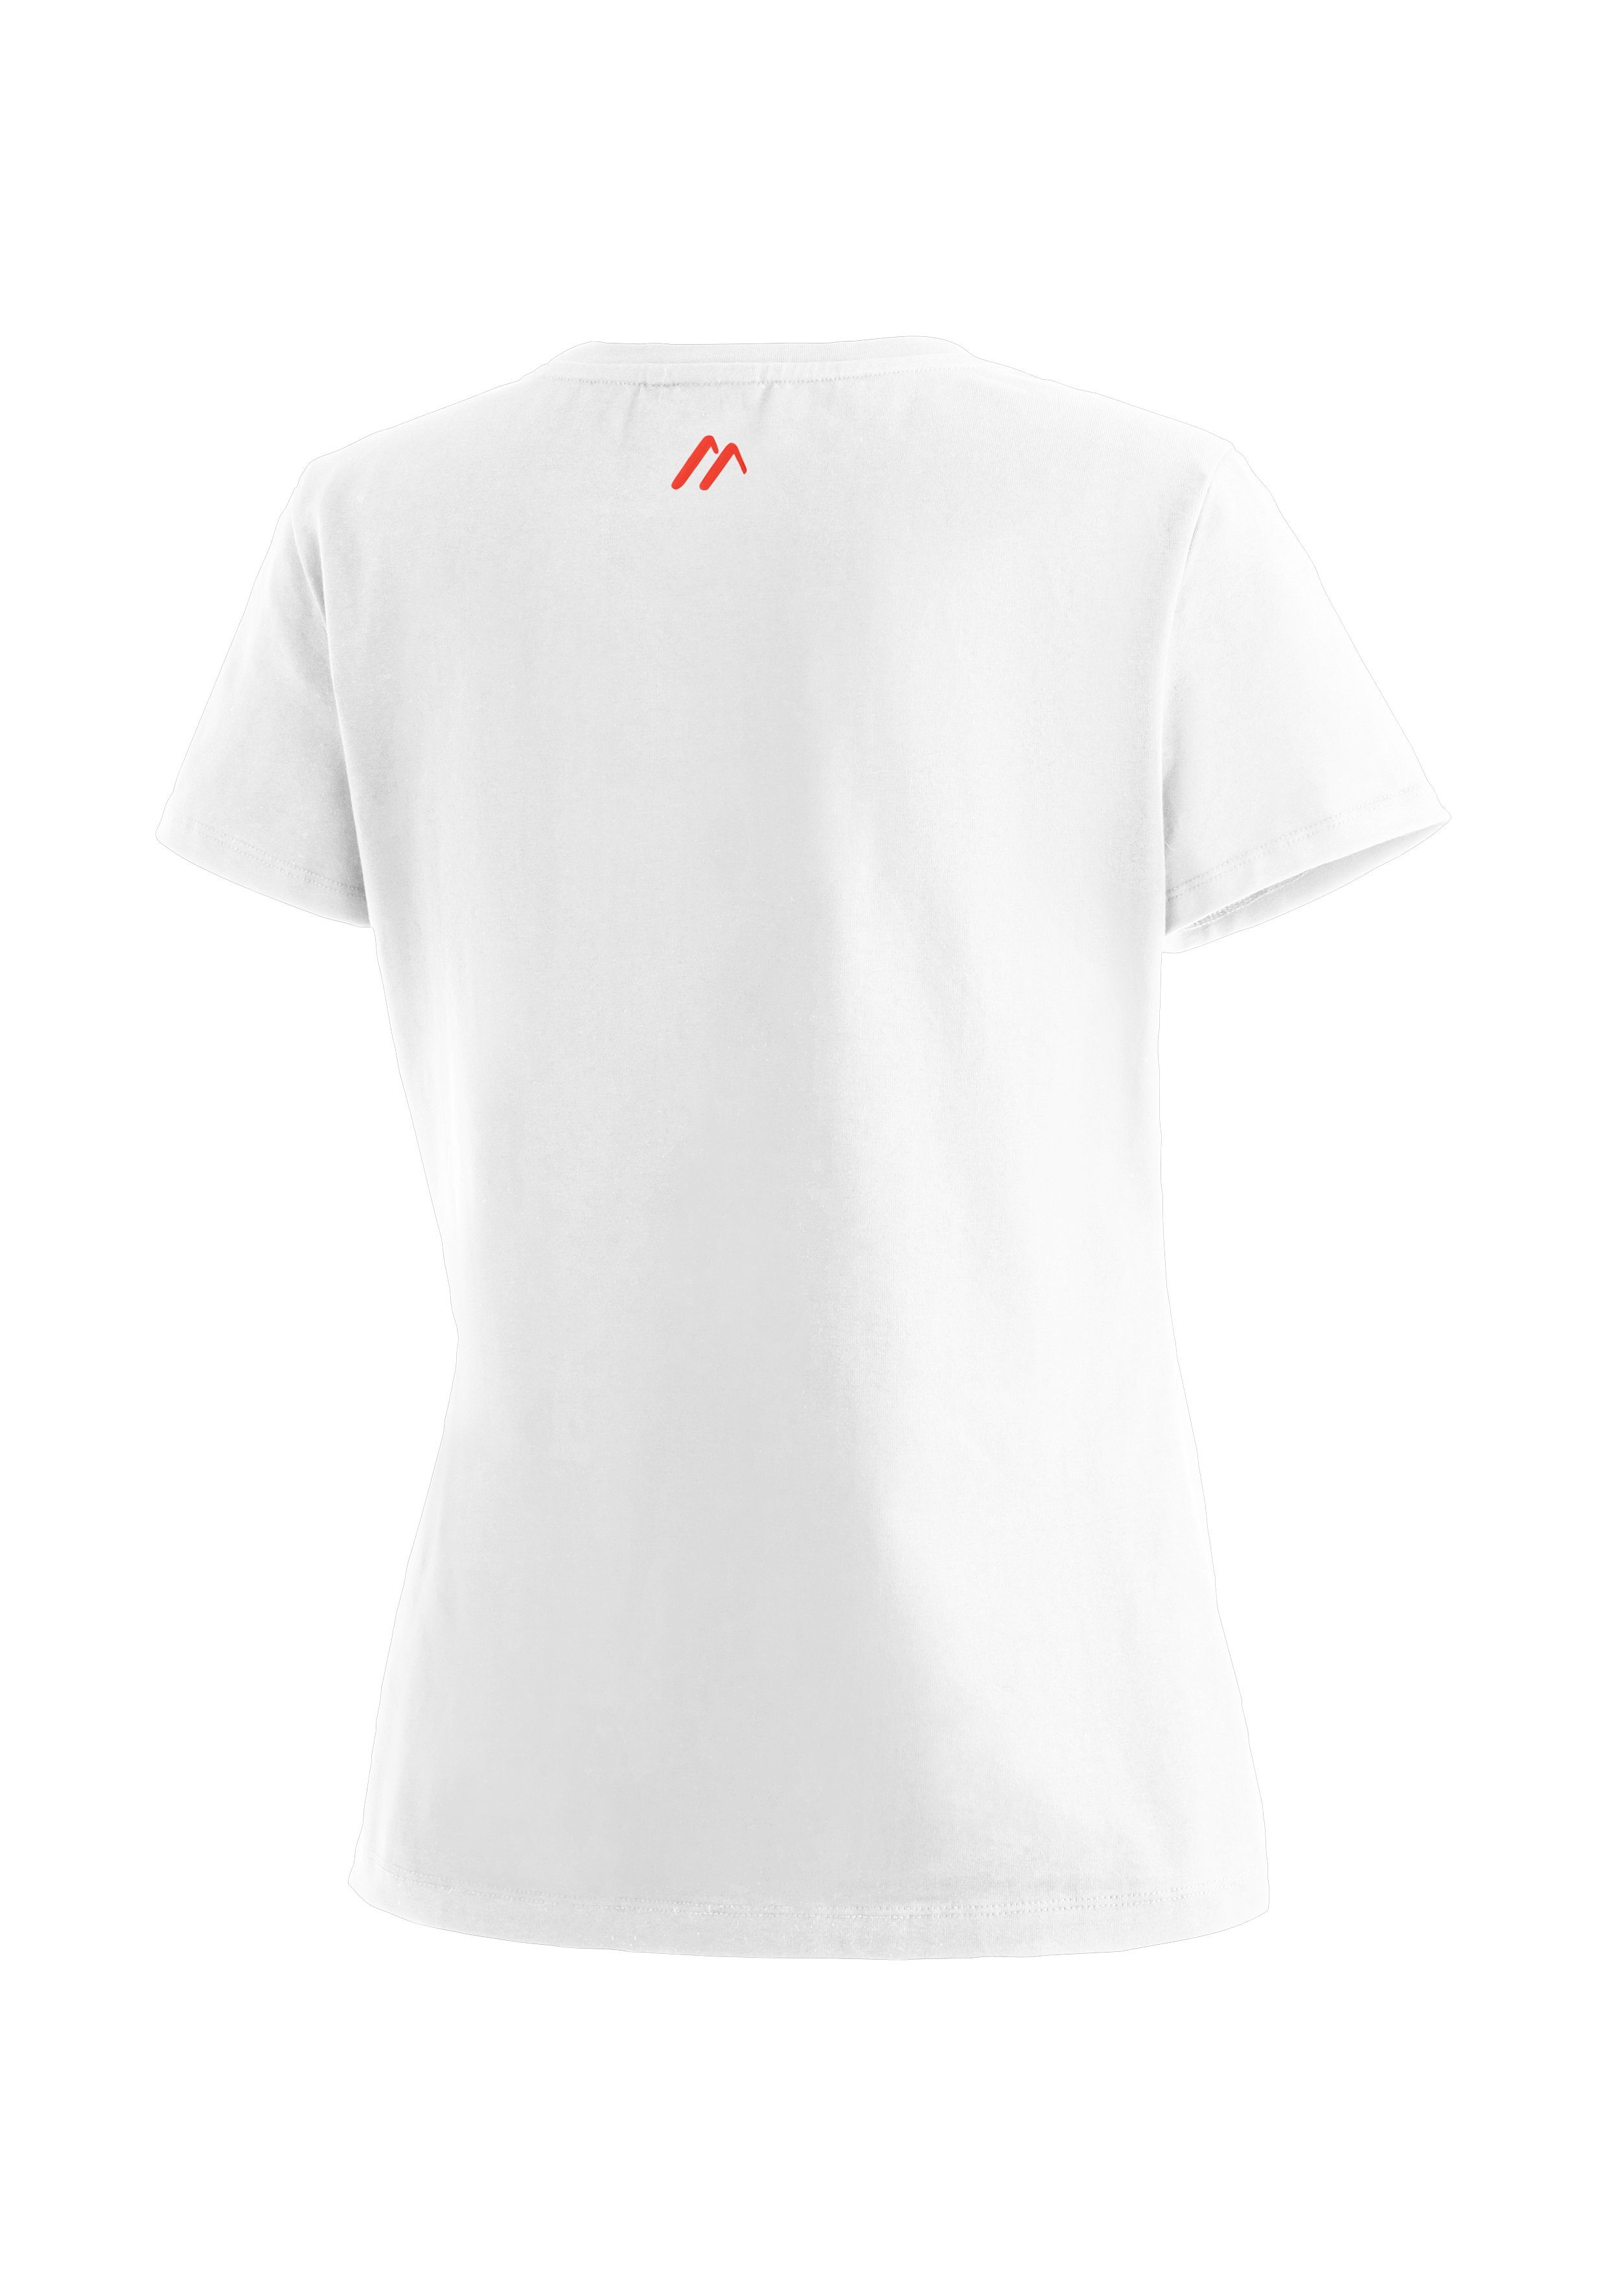 Tee elastischem MS Funktionsshirt weiß Maier aus W Vielseitiges Sports Material Rundhalsshirt